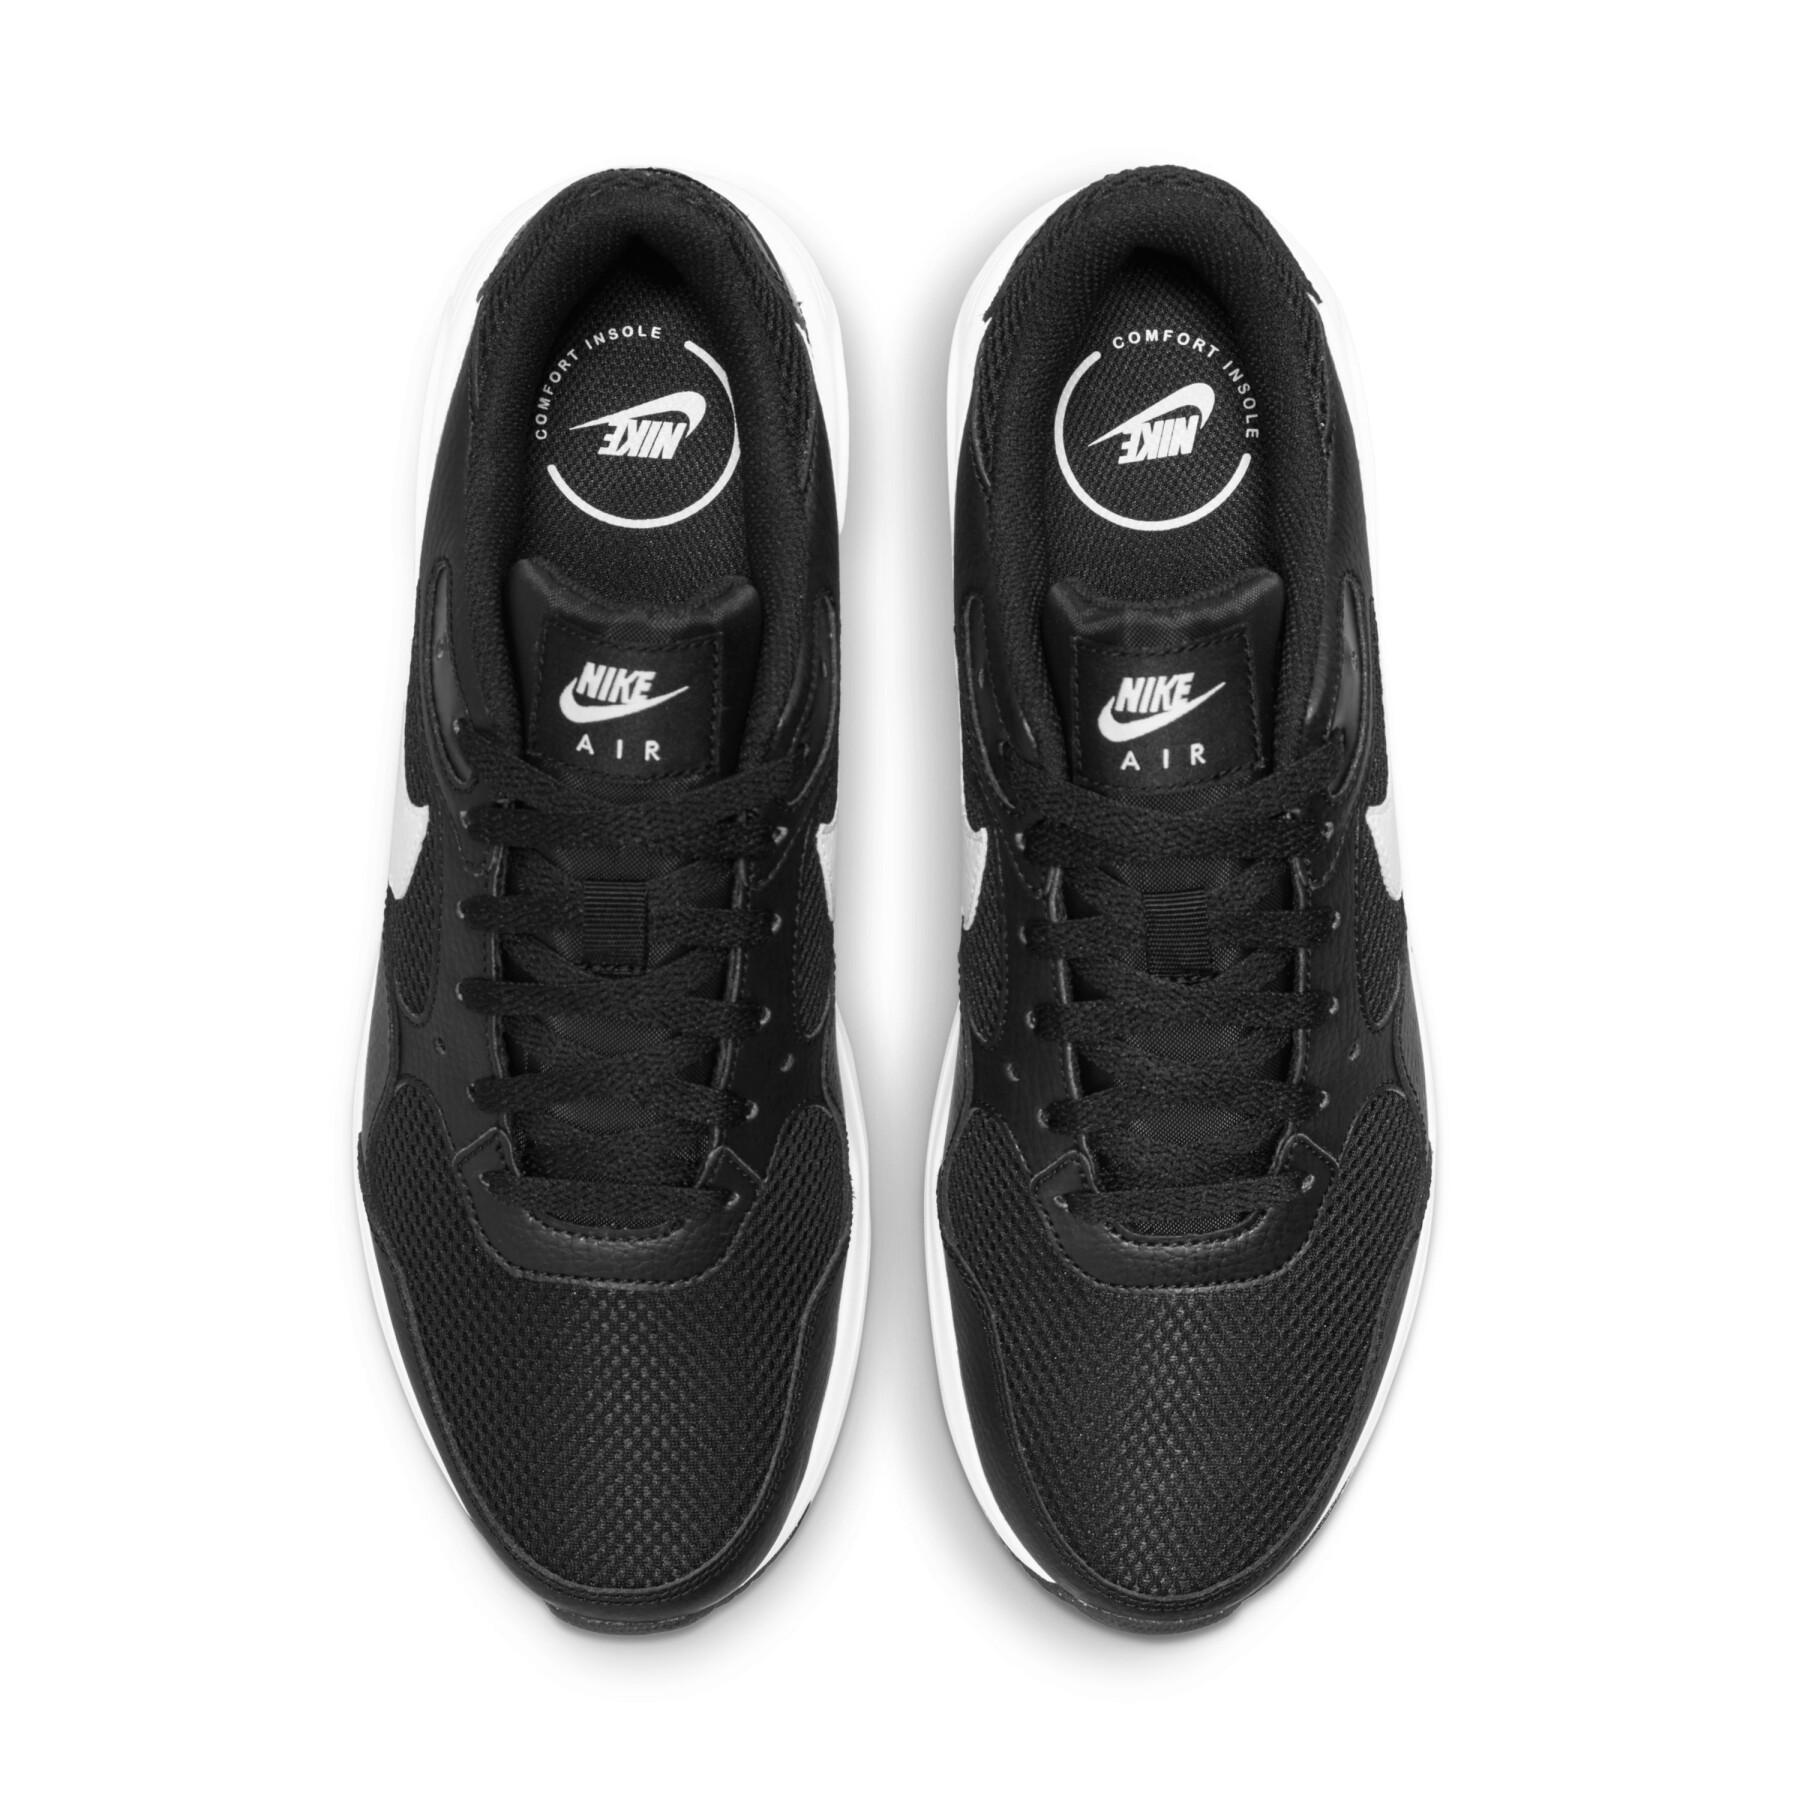 Sneakers Nike Air Max Sc